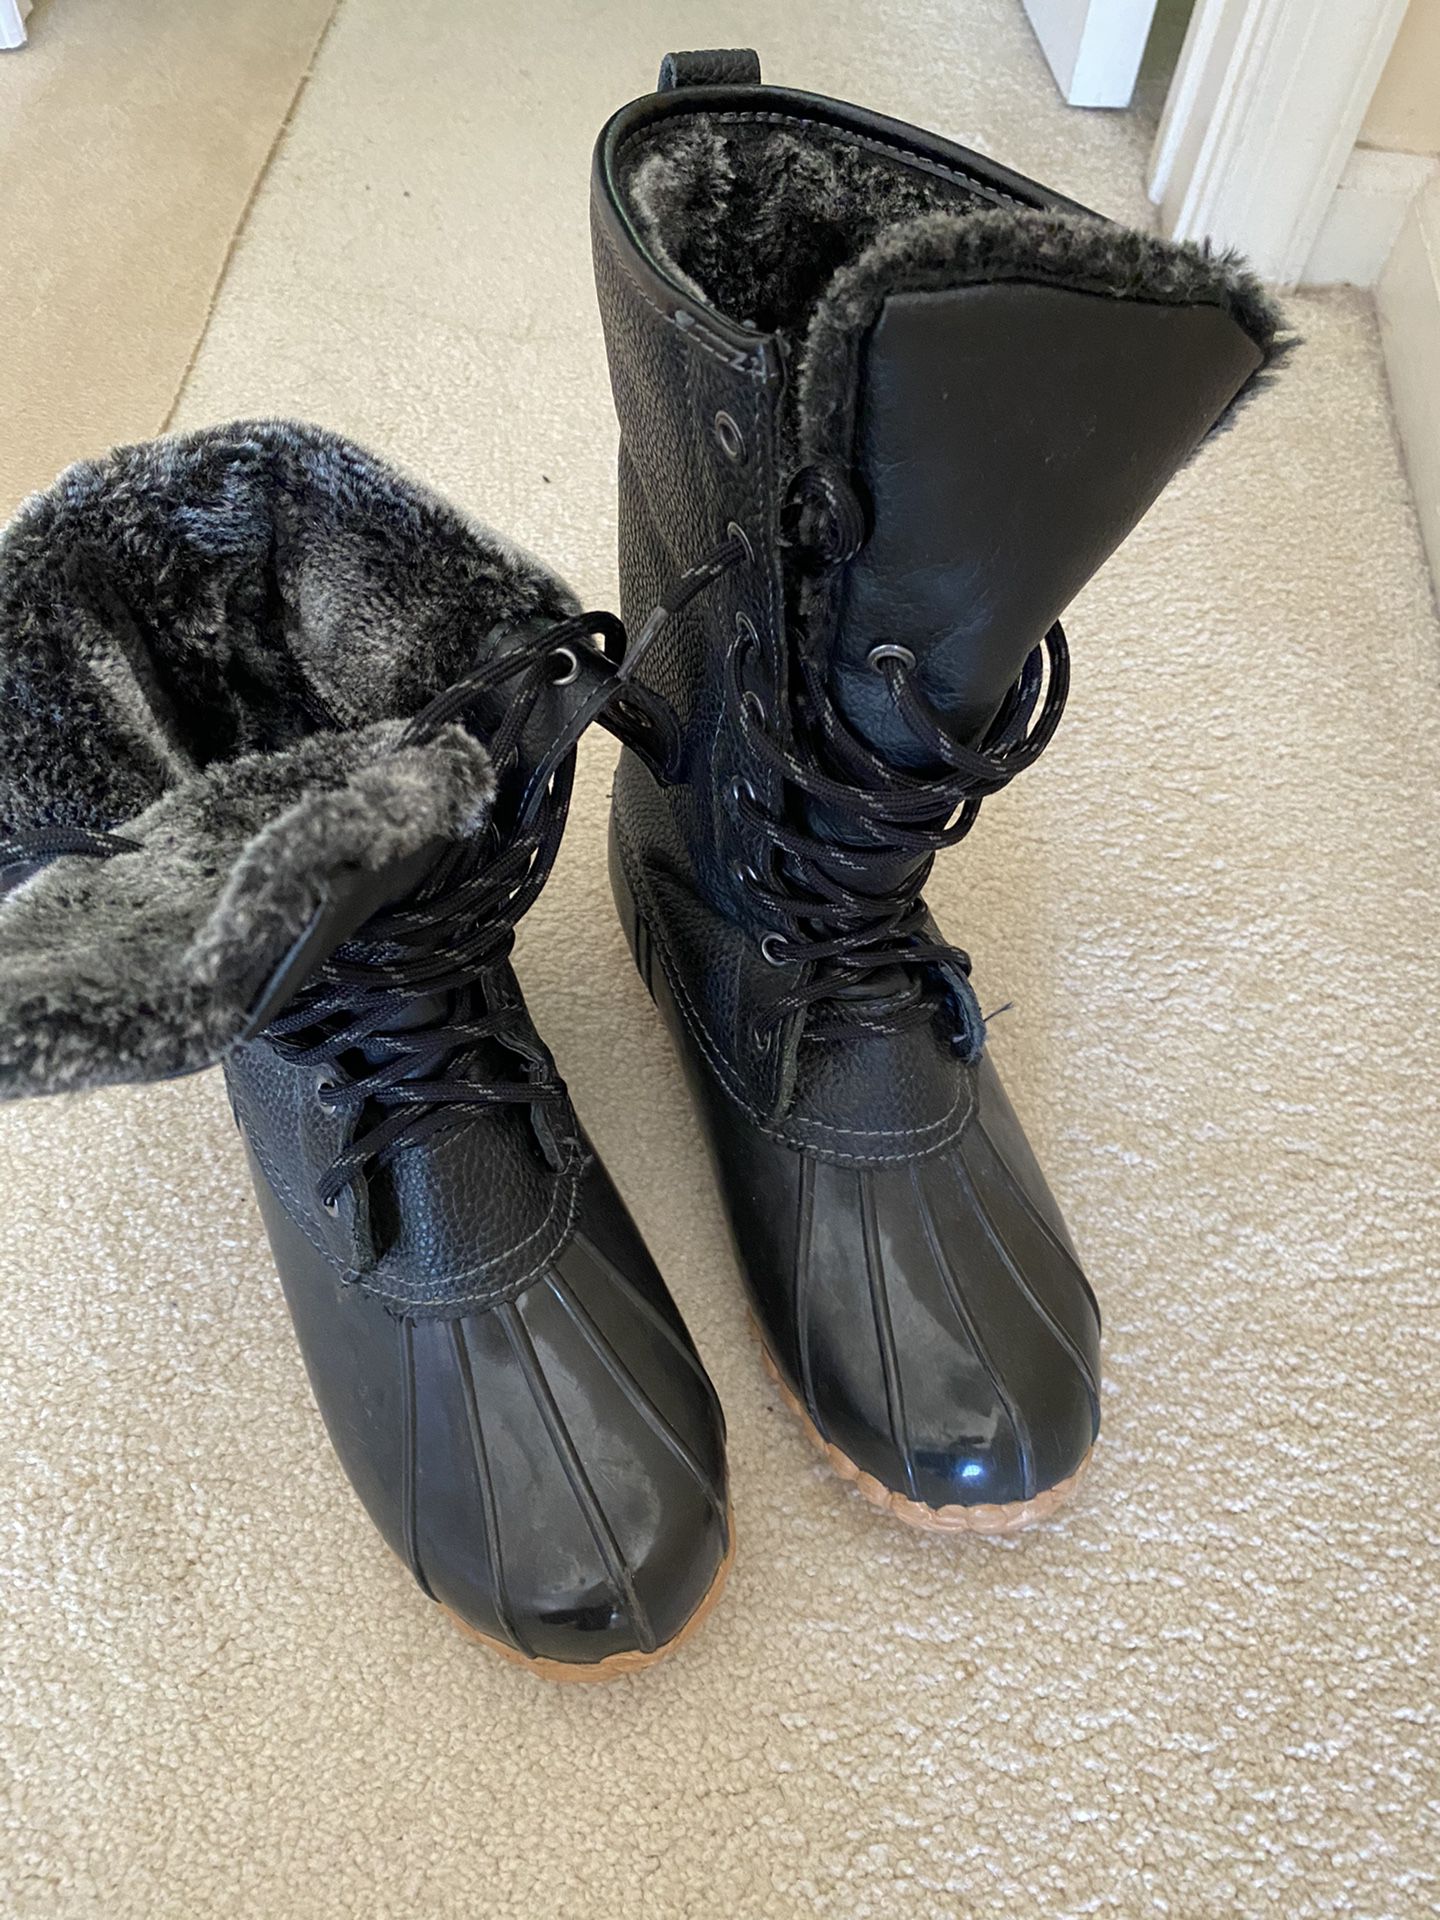 Ladies sports winter/rain boots like new